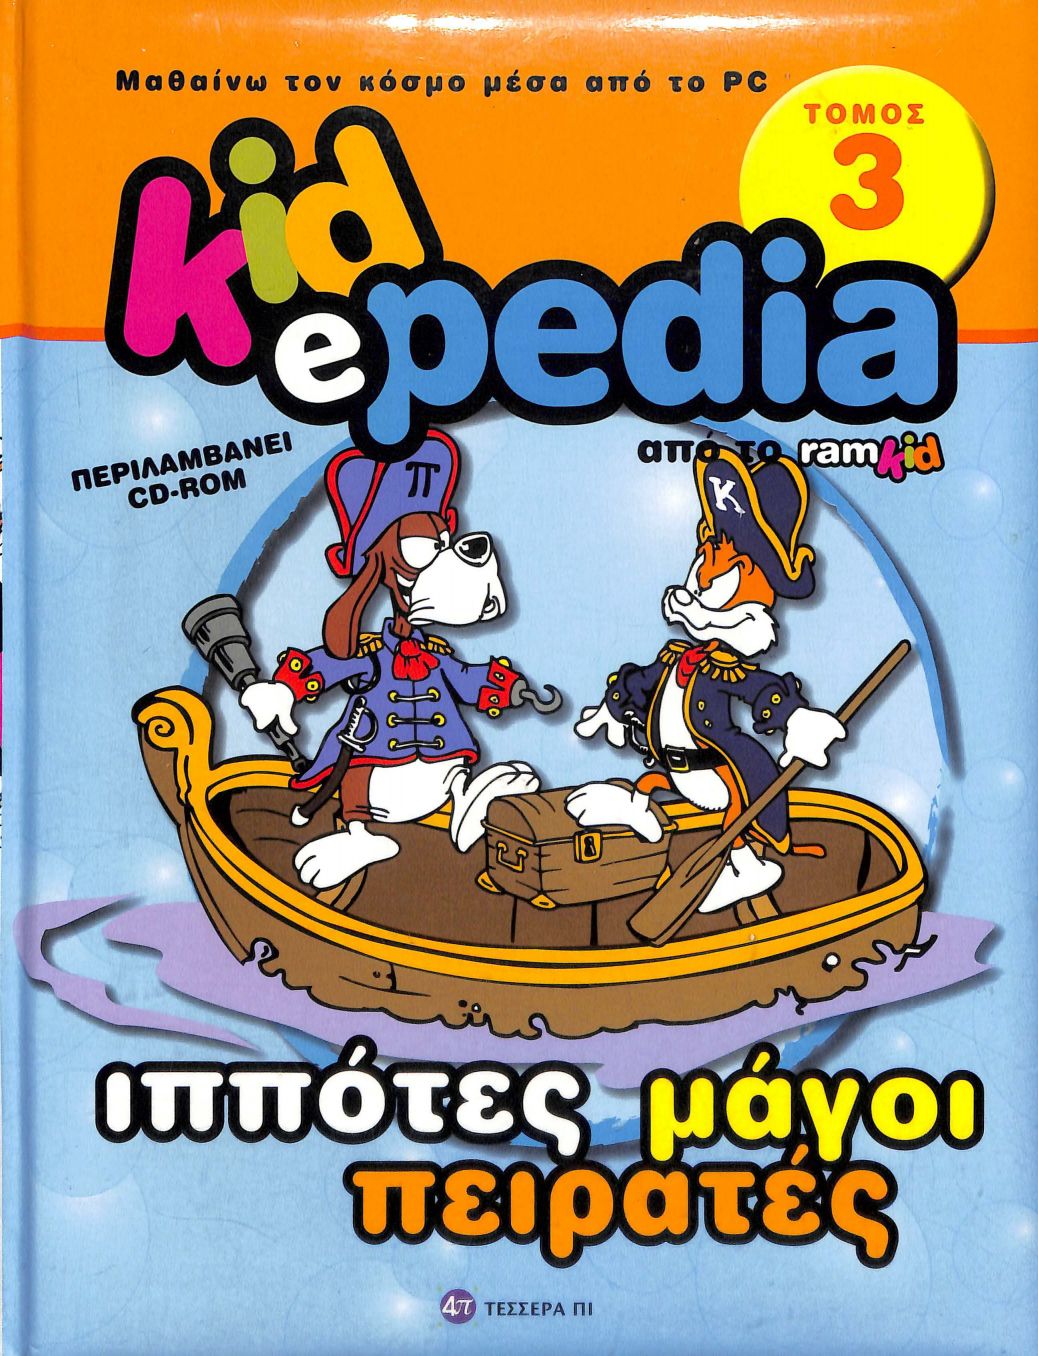 kidepedia